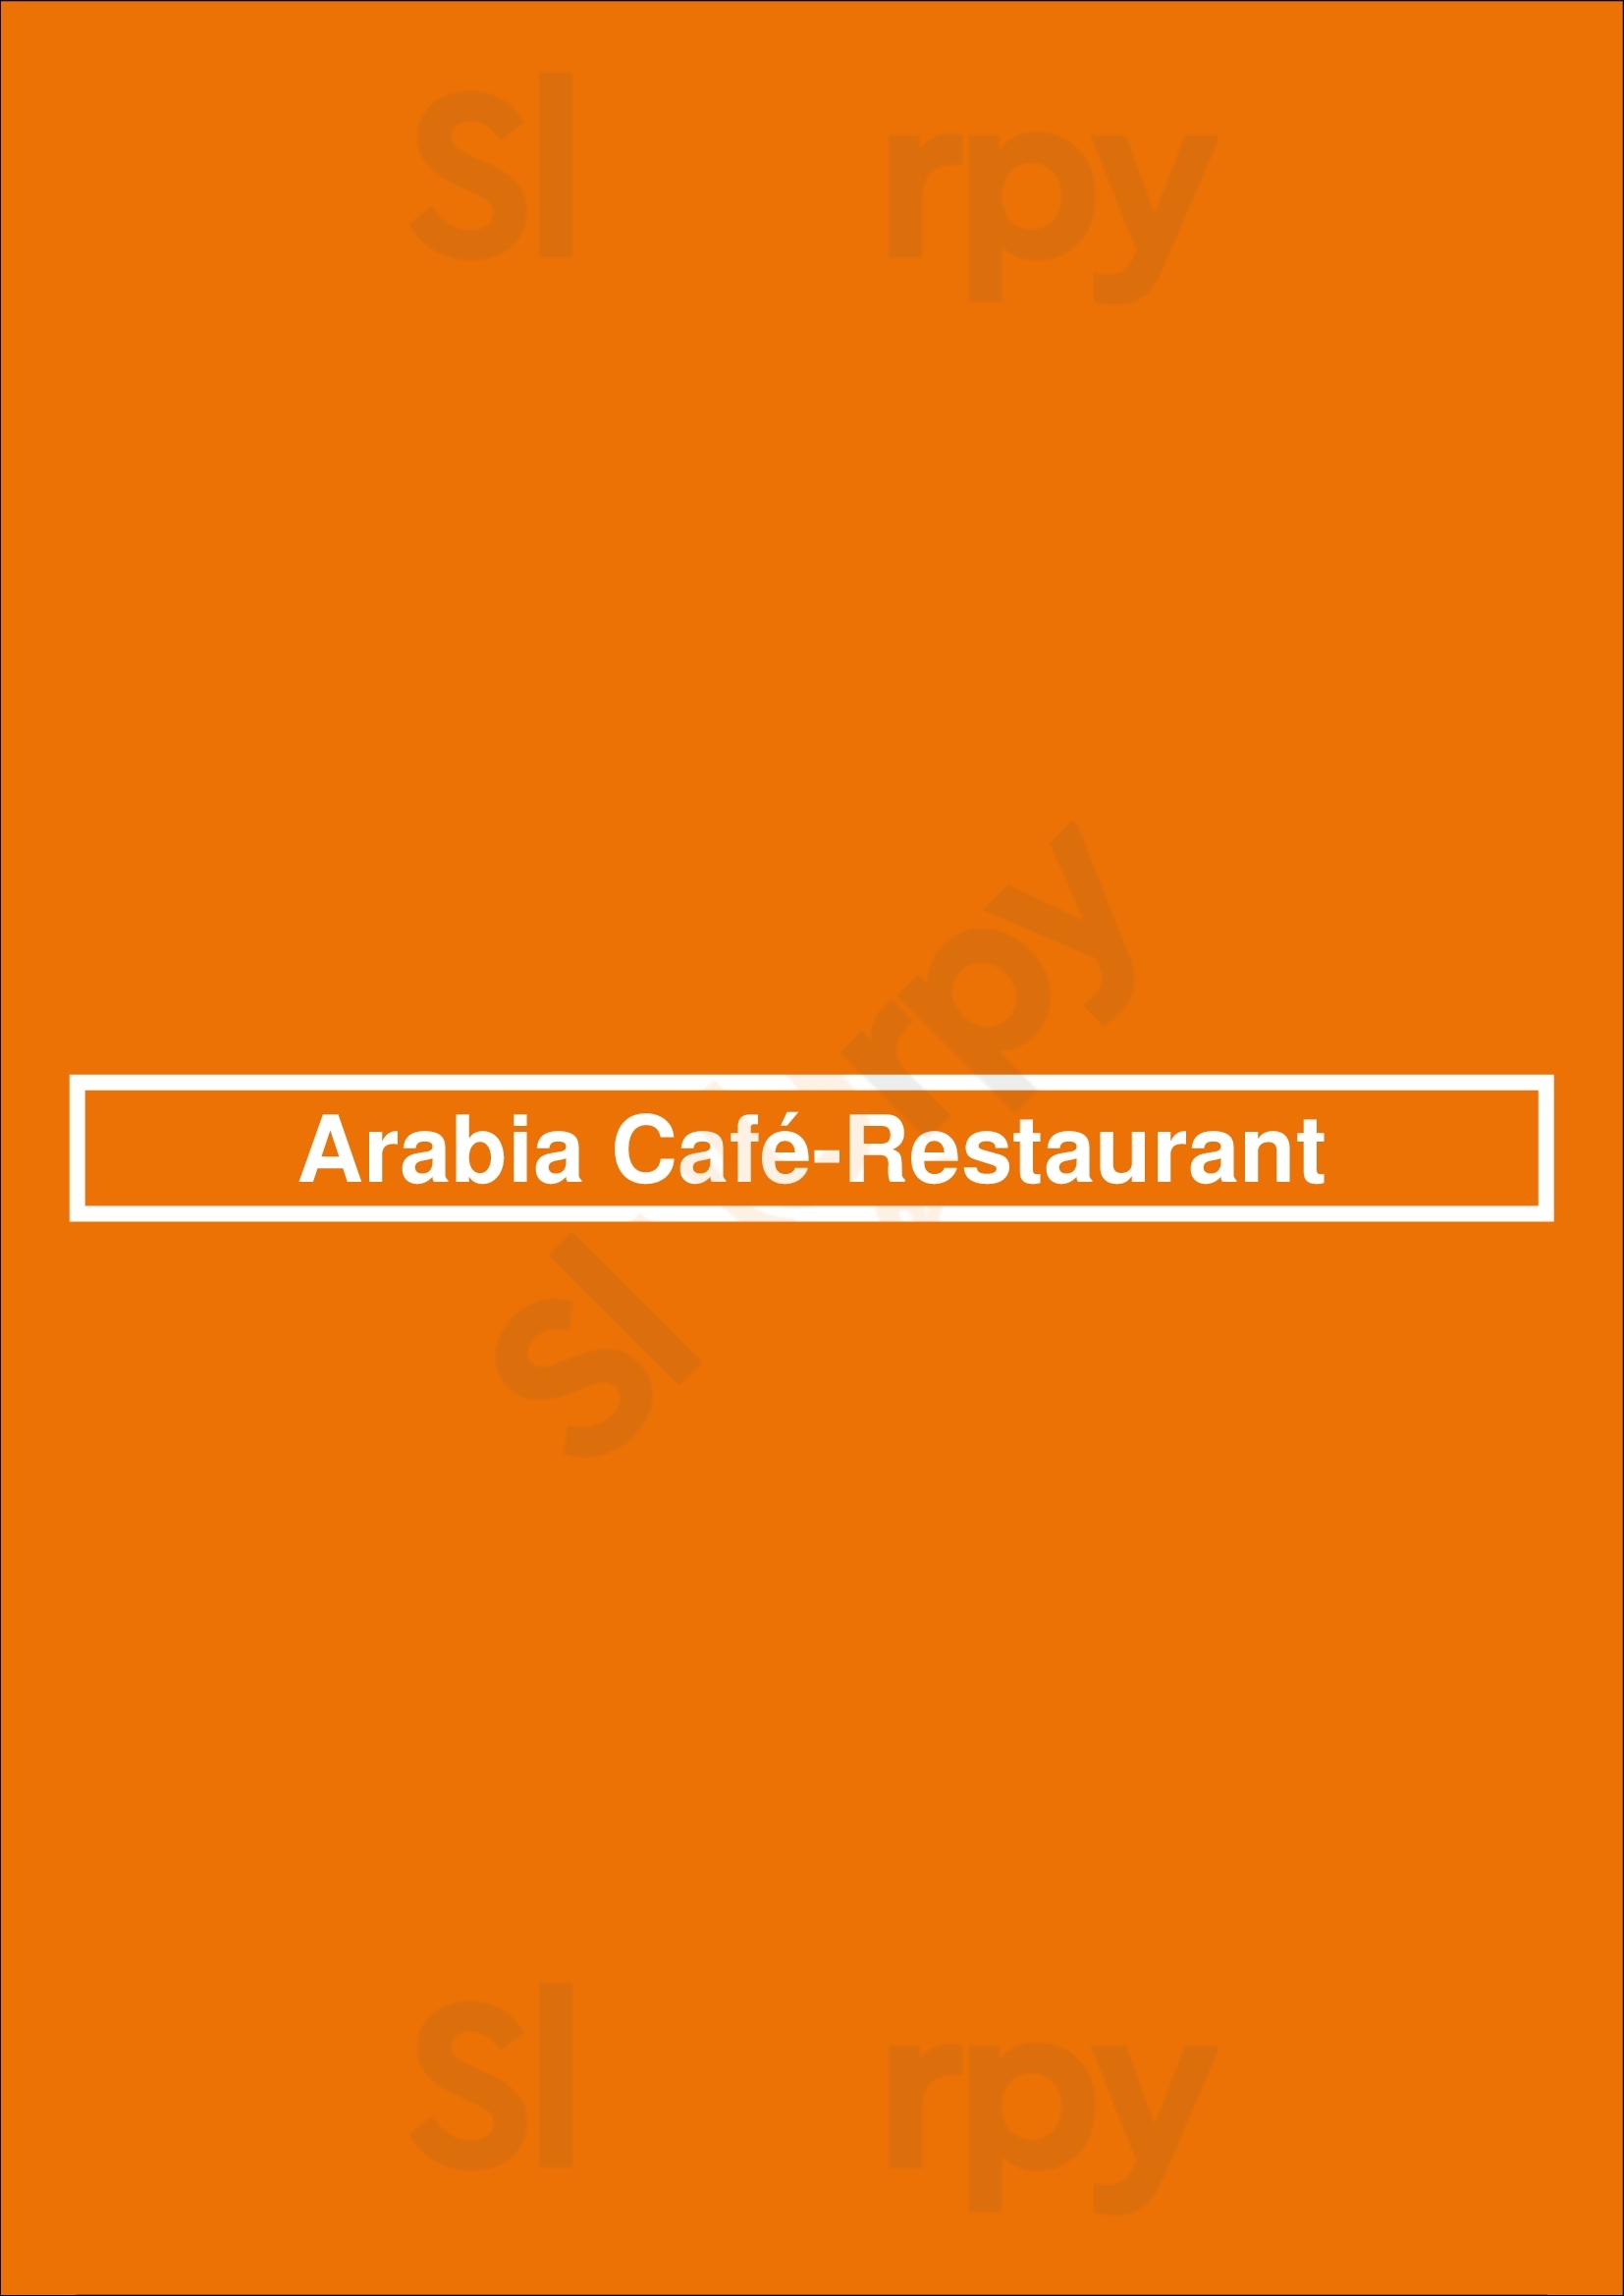 Arabia Café-restaurant Barcelona Menu - 1